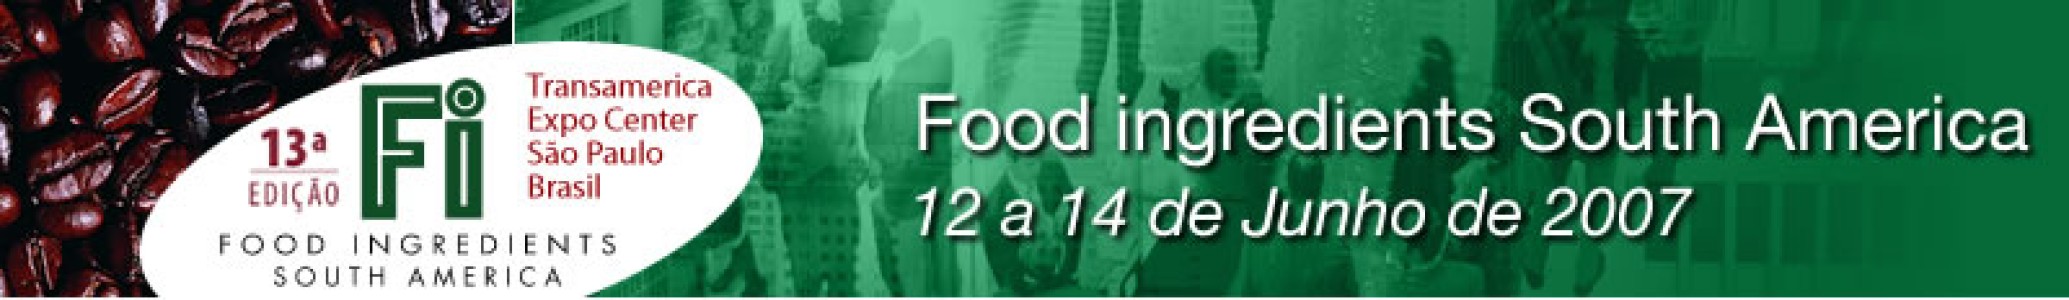 SE VIENE LA 13ª EDICIÓN DE FOOD INGREDIENTS SOUTH AMÉRICA